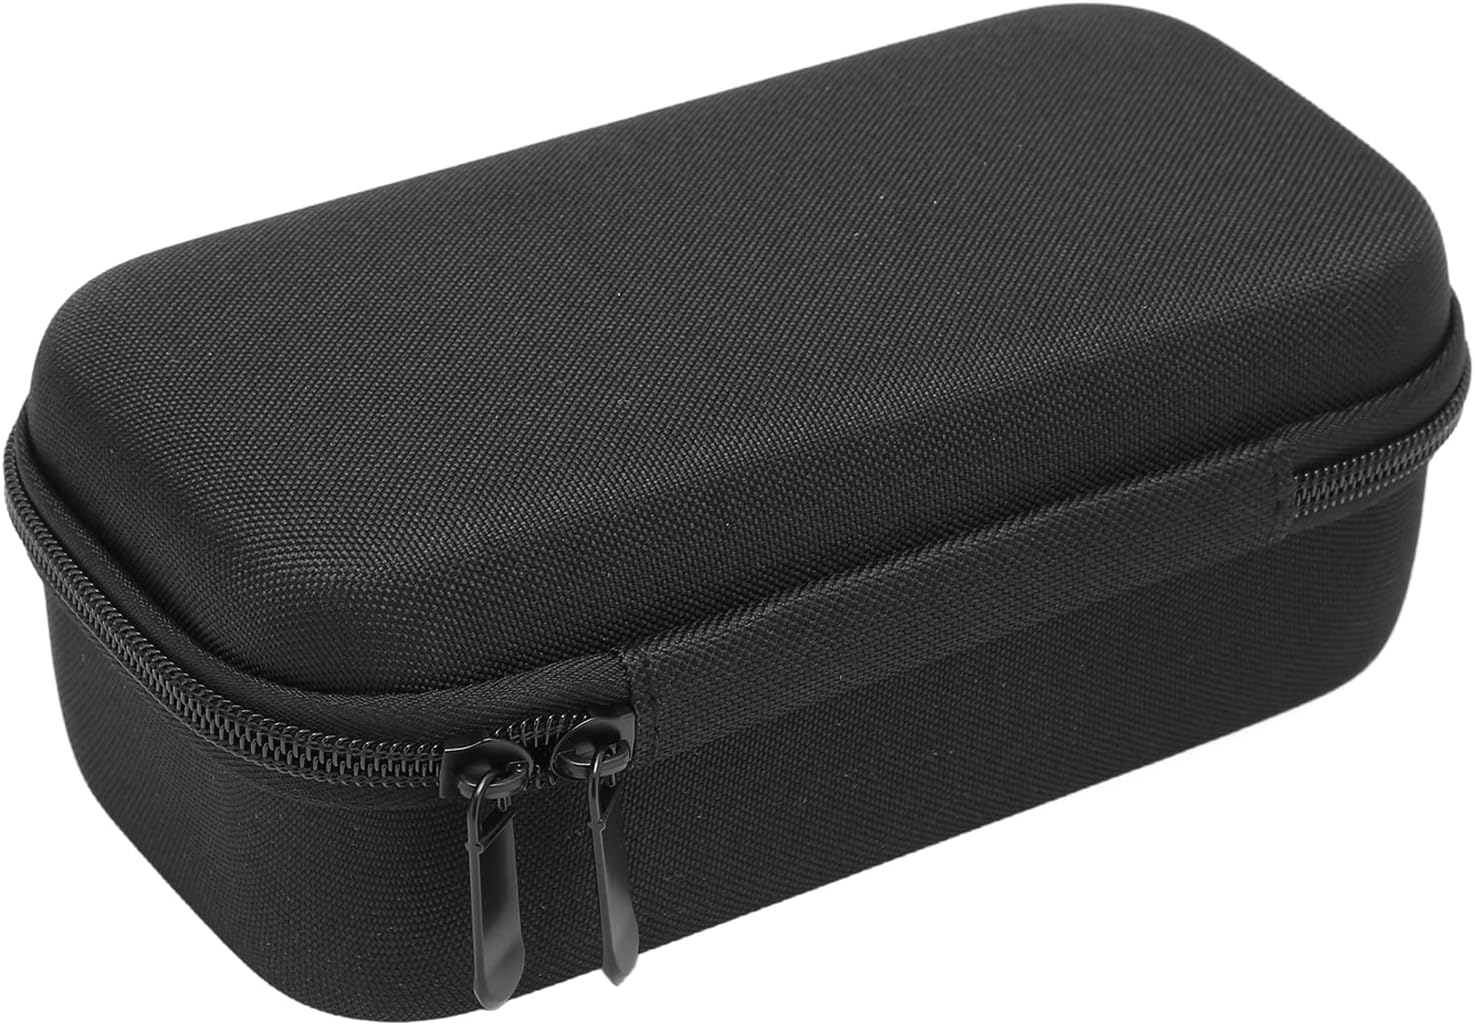 遊戲鼠標 EVA 保護套適用於 Razer Basilisk，便攜式鼠標收納包旅行攜帶包適用於無線鼠標，防水防震